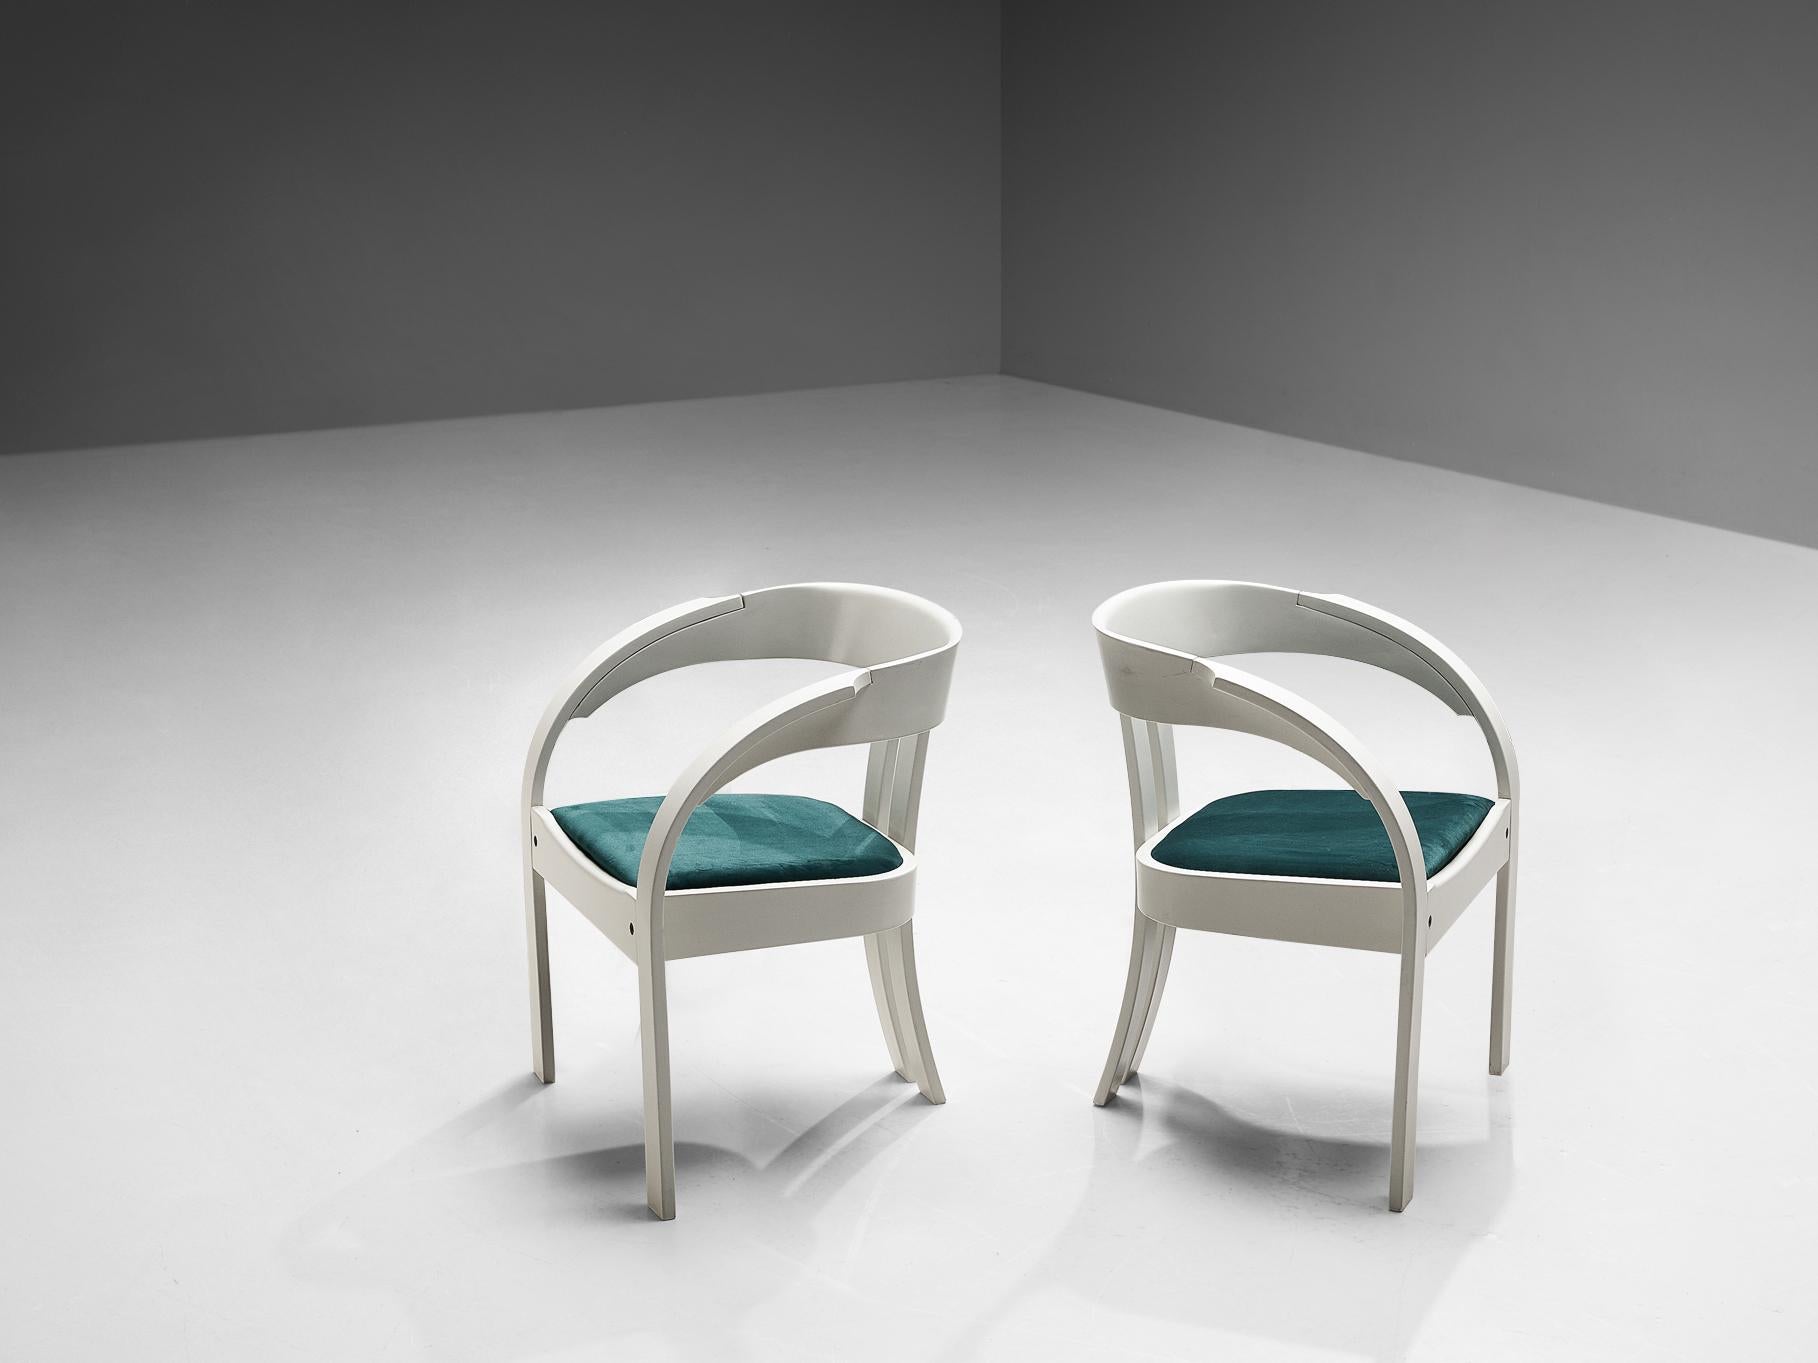 Giovanni Battista Bassi pour Poltronova, paire de fauteuils modèle 'Elisa', velours, hêtre laqué, Italie, années 1960.

Ces chaises merveilleusement construites sont basées sur une construction solide où des lignes claires et fluides sont